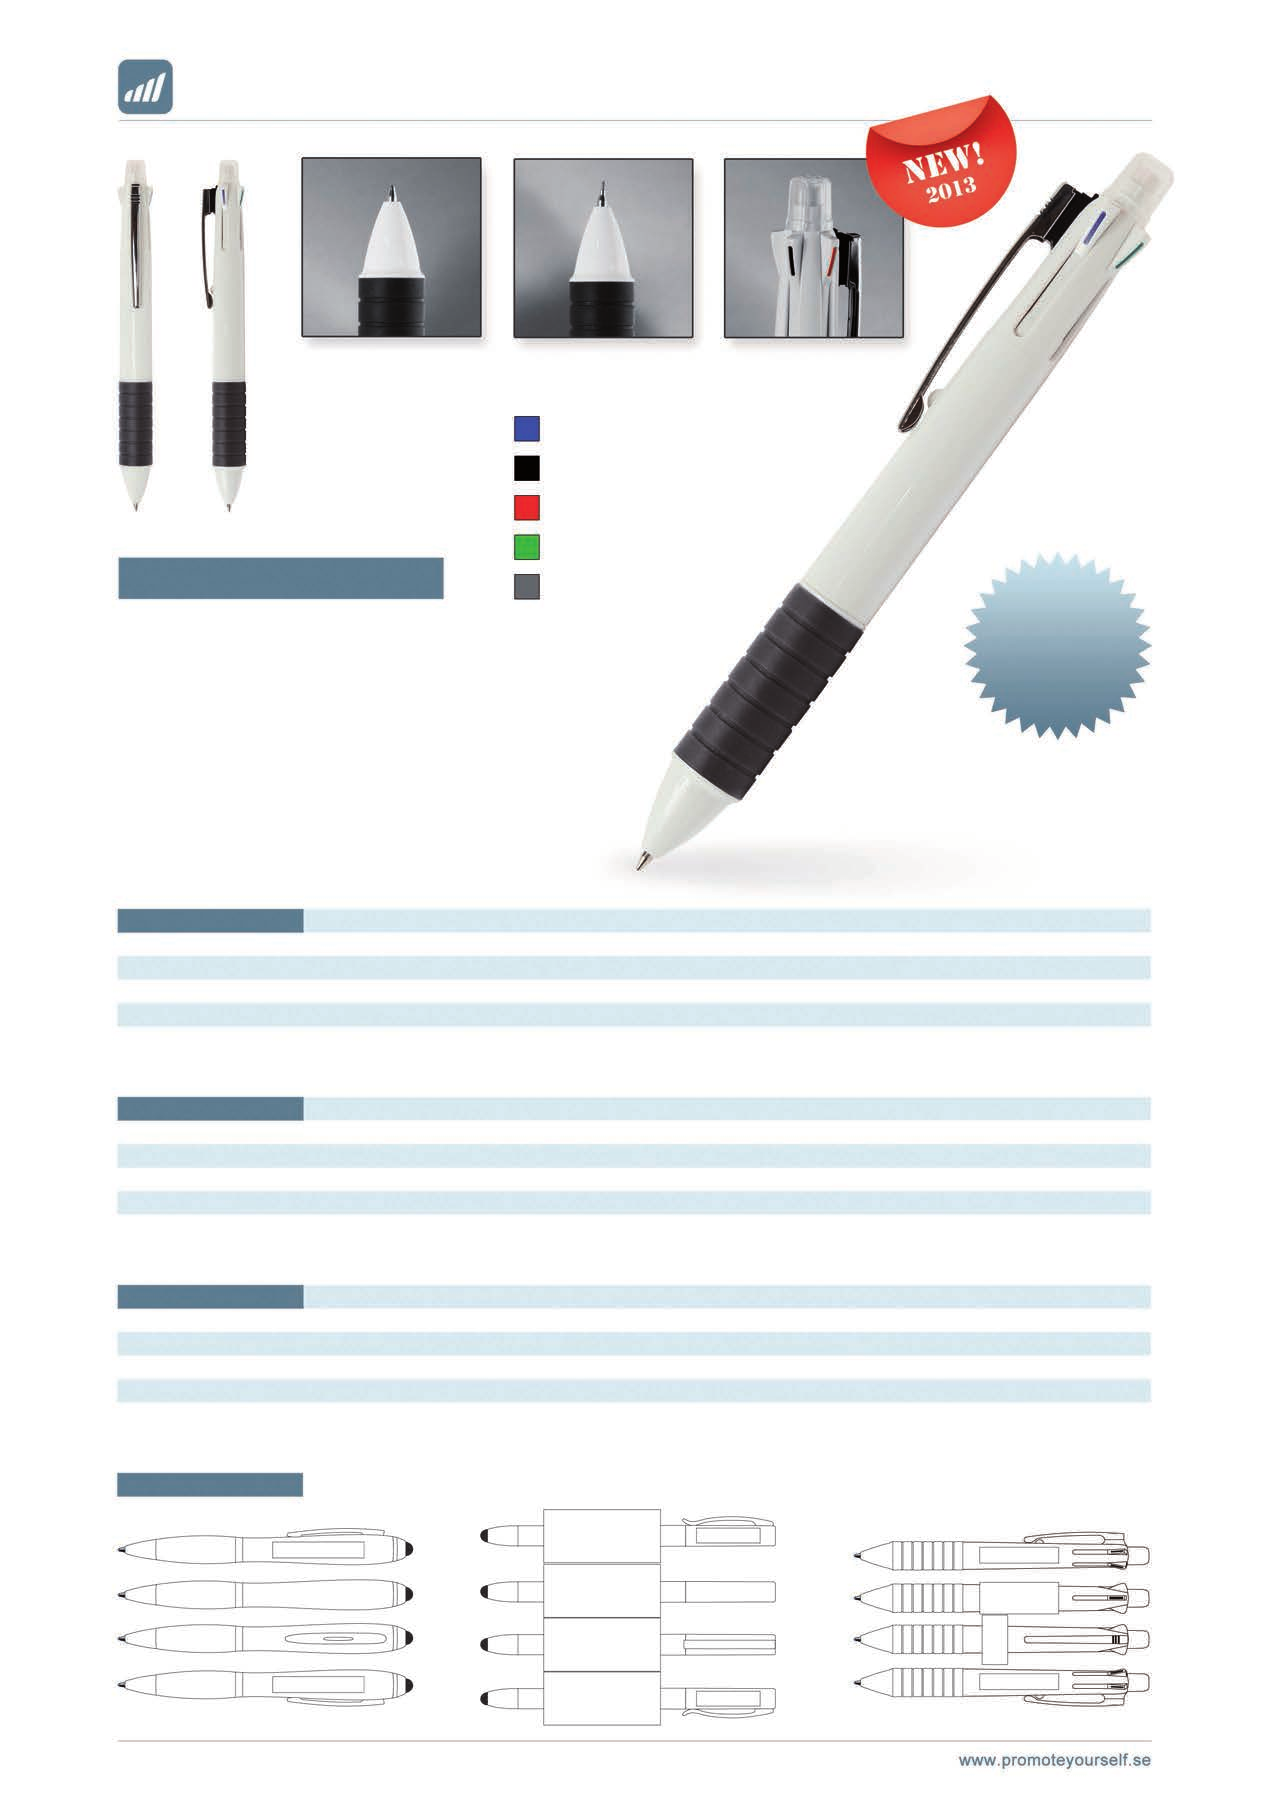 1,0mm kulspets i fyra färger 0,5mm blyerts (påfyllbar) Radergummi 136-011 vit/grå Blått bläck Svart bläck Rött bläck X5 Flerfunktionspenna med kulspets i fyra olika färger, samt påfyllbar blyerts i